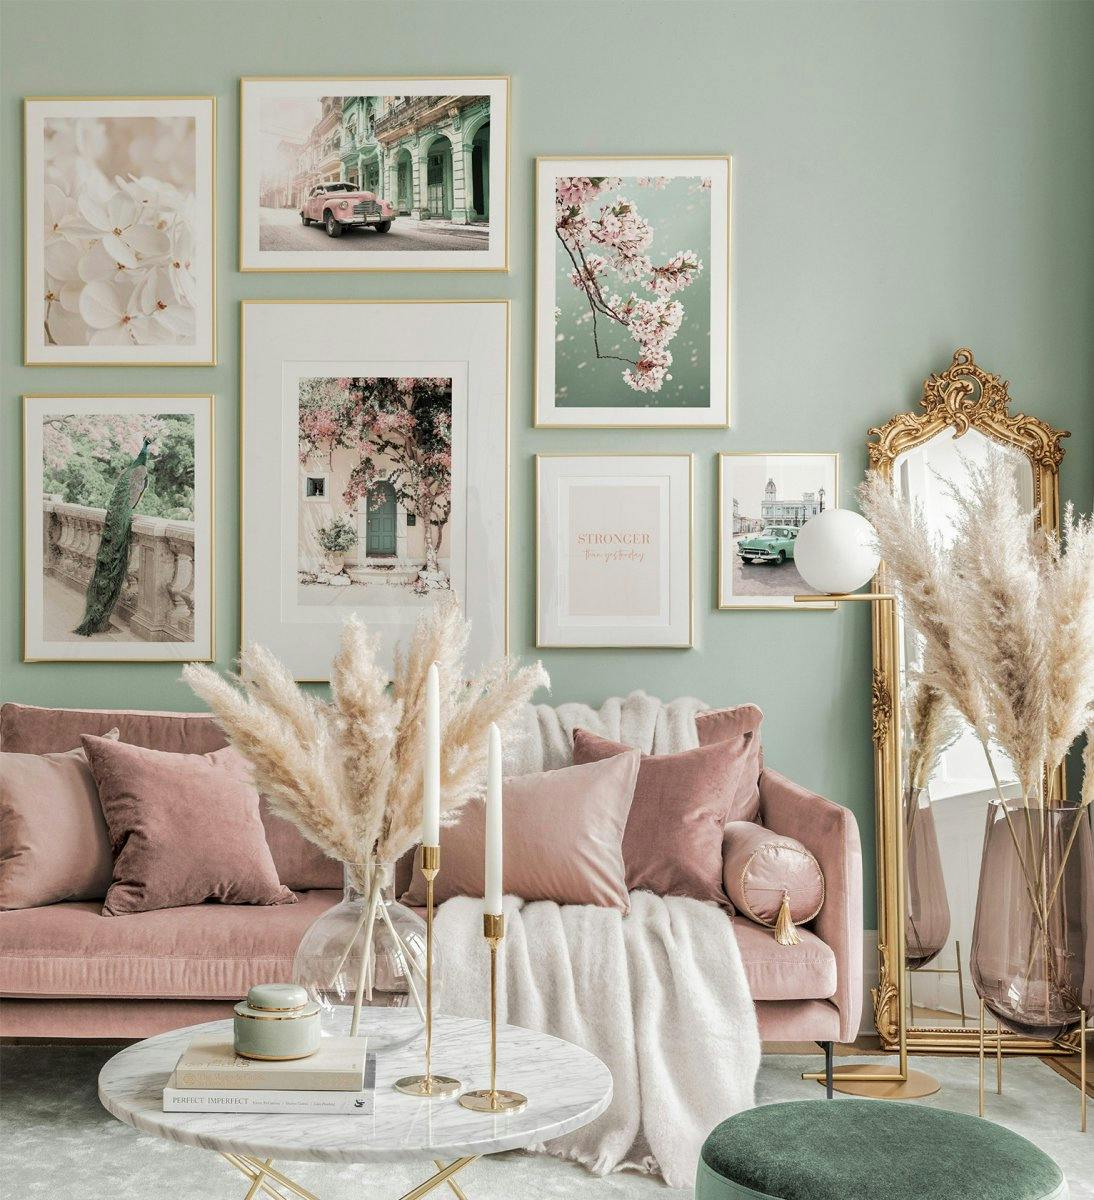 جدار معرض نباتي باللون الأخضر الوردي والبيج مع إطارات ذهبية لغرفة المعيشة